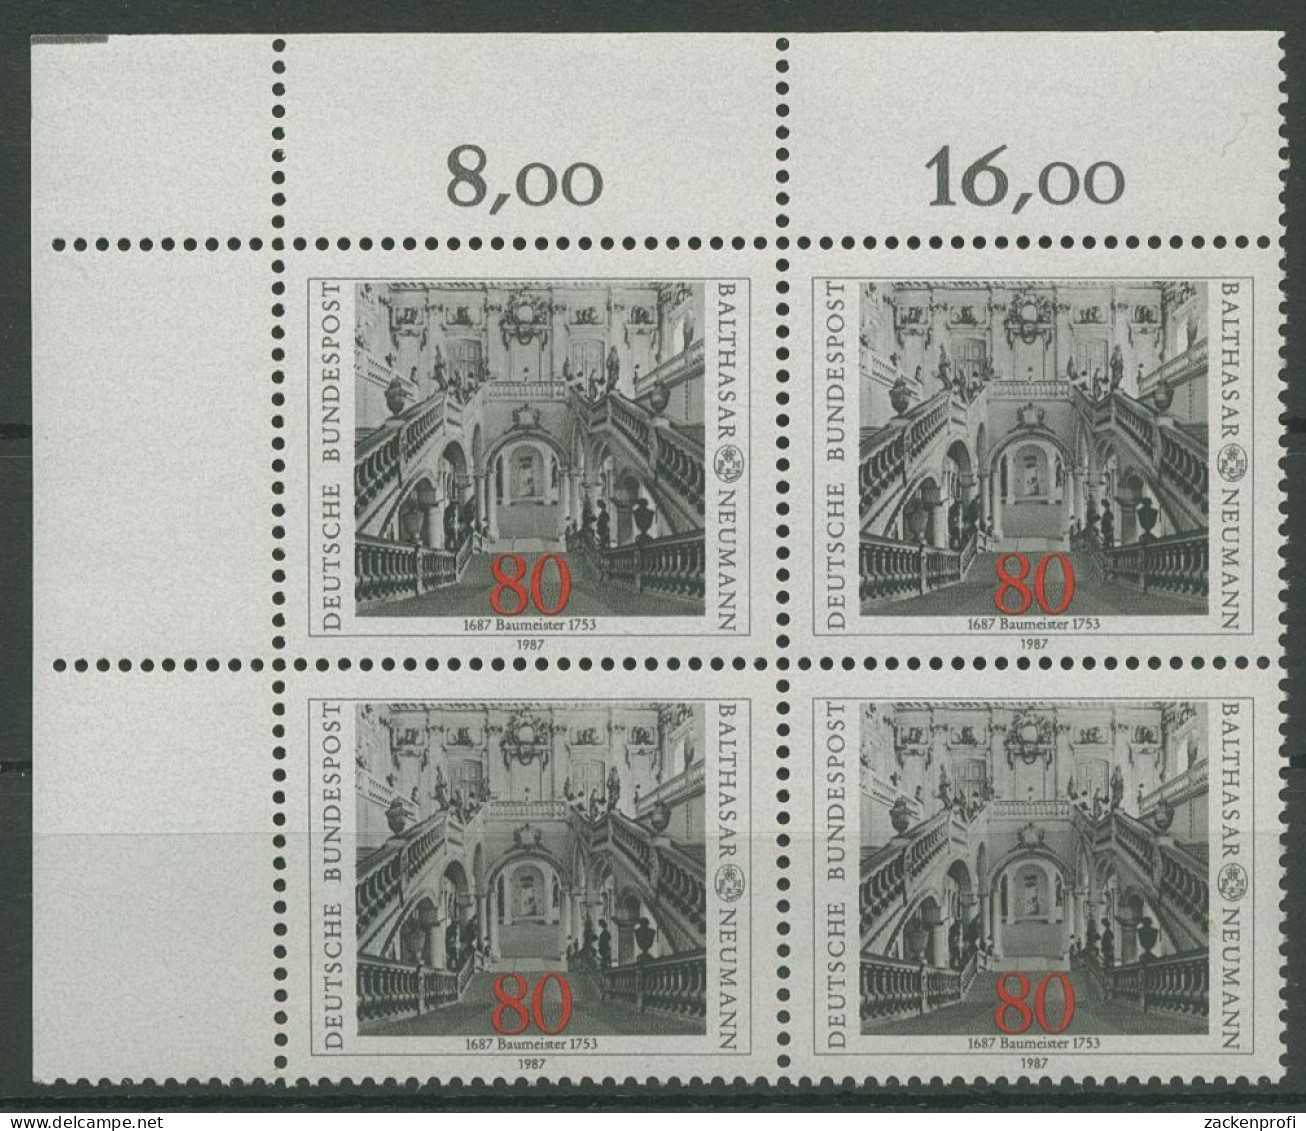 Bund 1987 Balthasar Neumann 1307 4er-Block Ecke 1 Postfrisch (R80181) - Unused Stamps